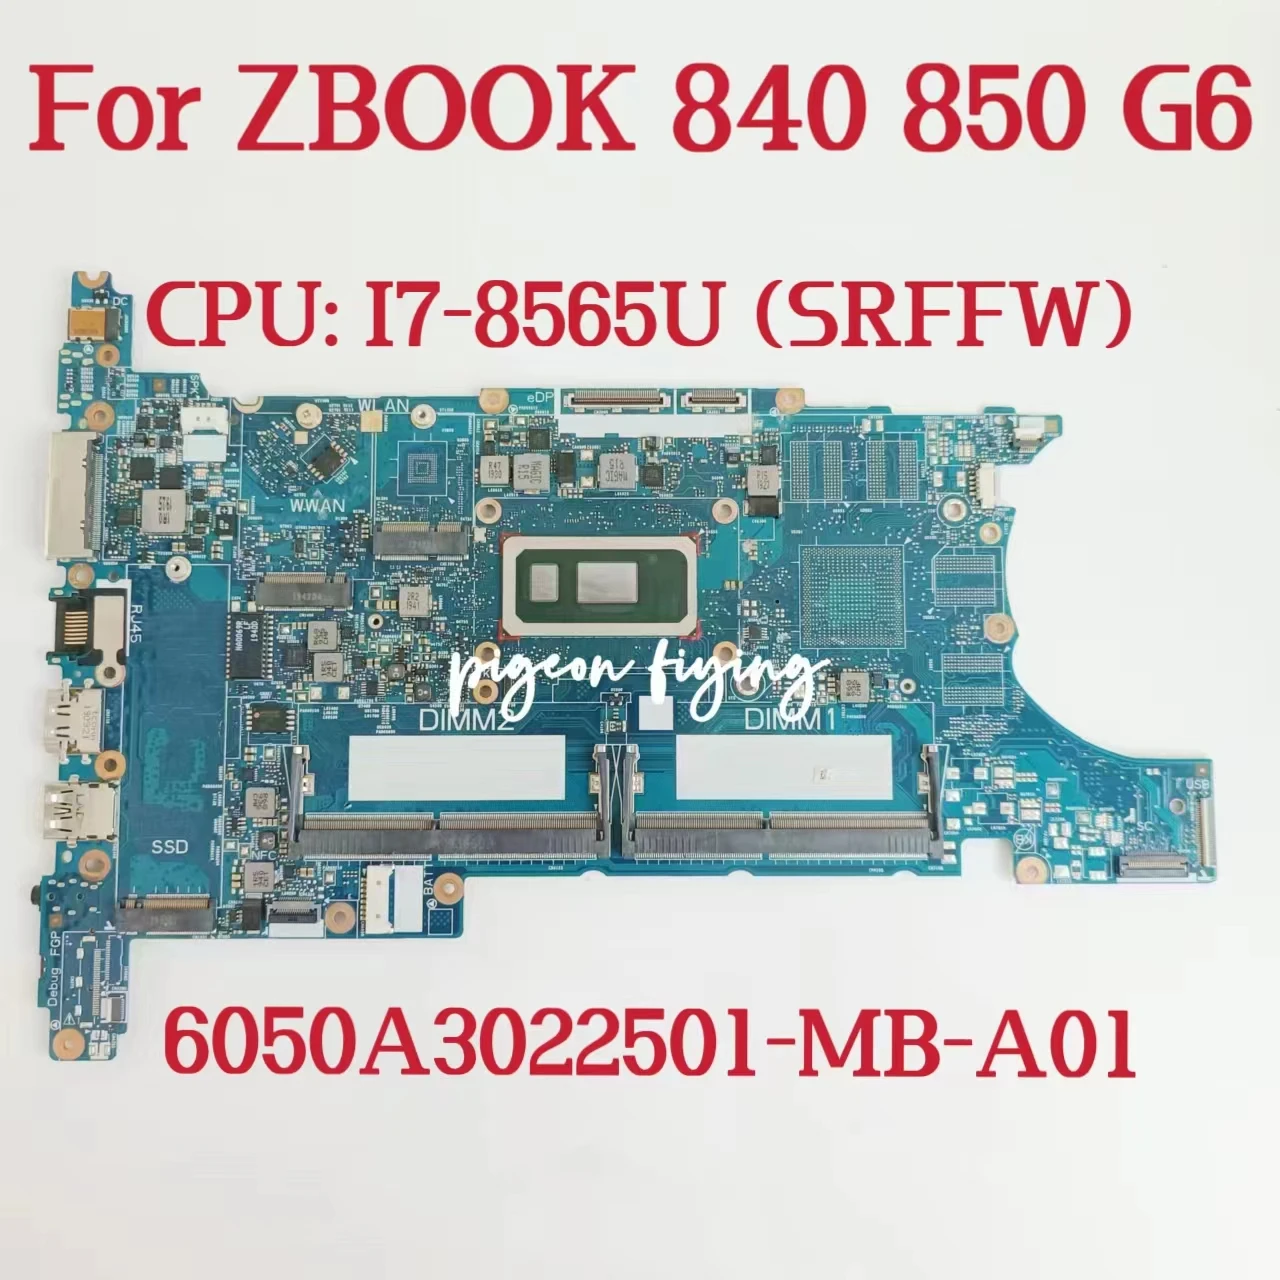 

Материнская плата для ноутбука HP ZBOOK 840 850 G6, системная плата 6050A3022501 CPU: I7-8565U SRFFW DDR4